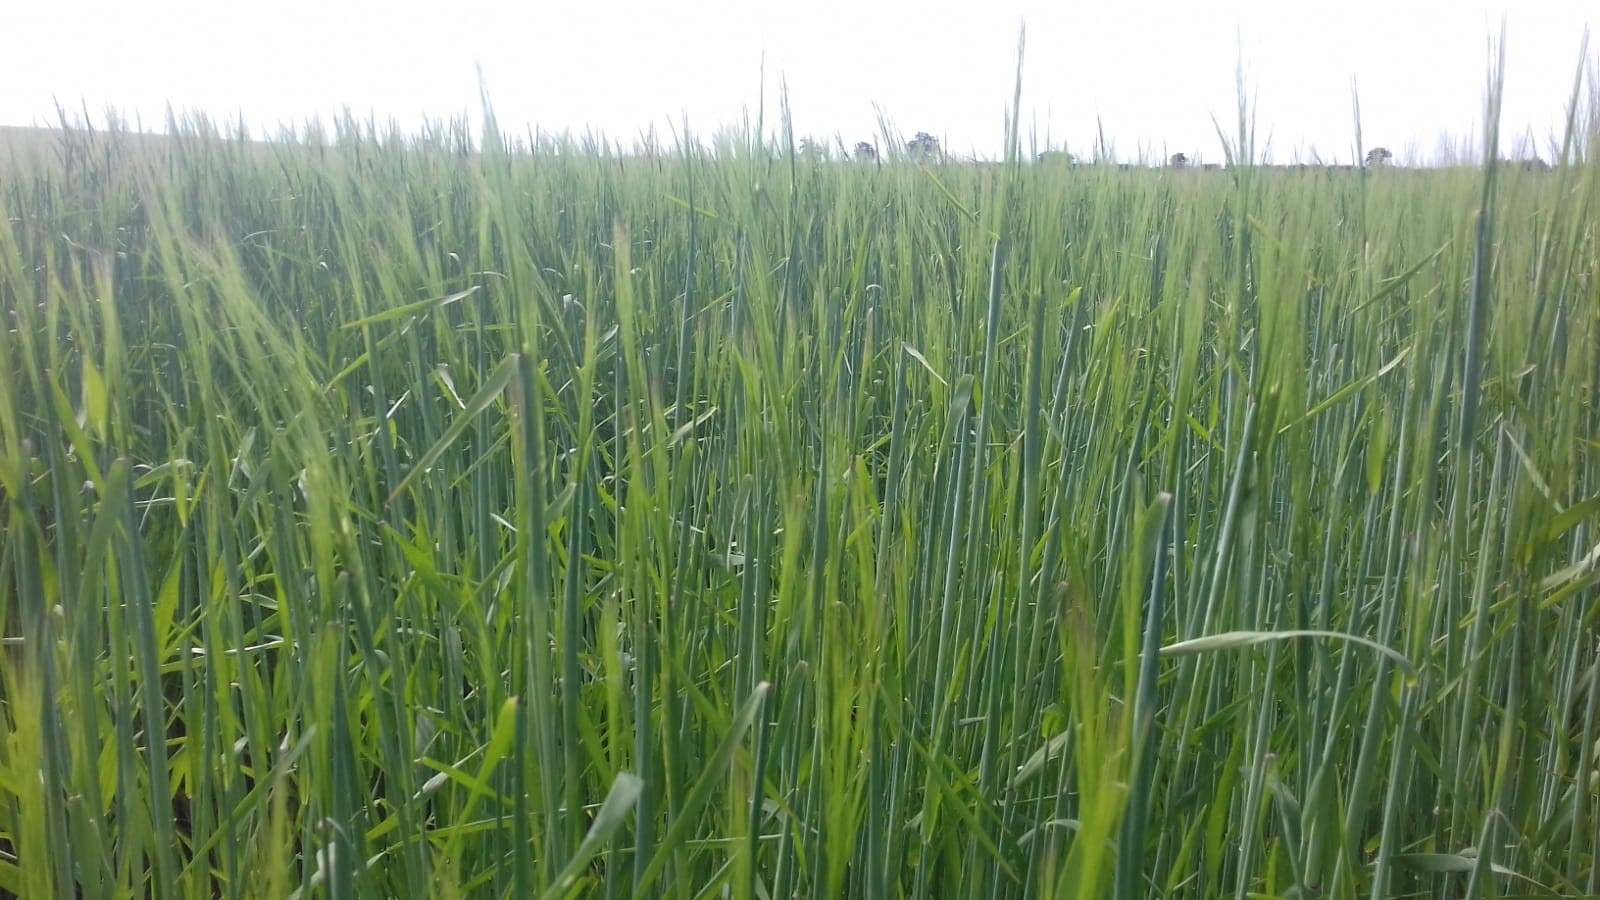 Hana barley growing in Norfolk, UK